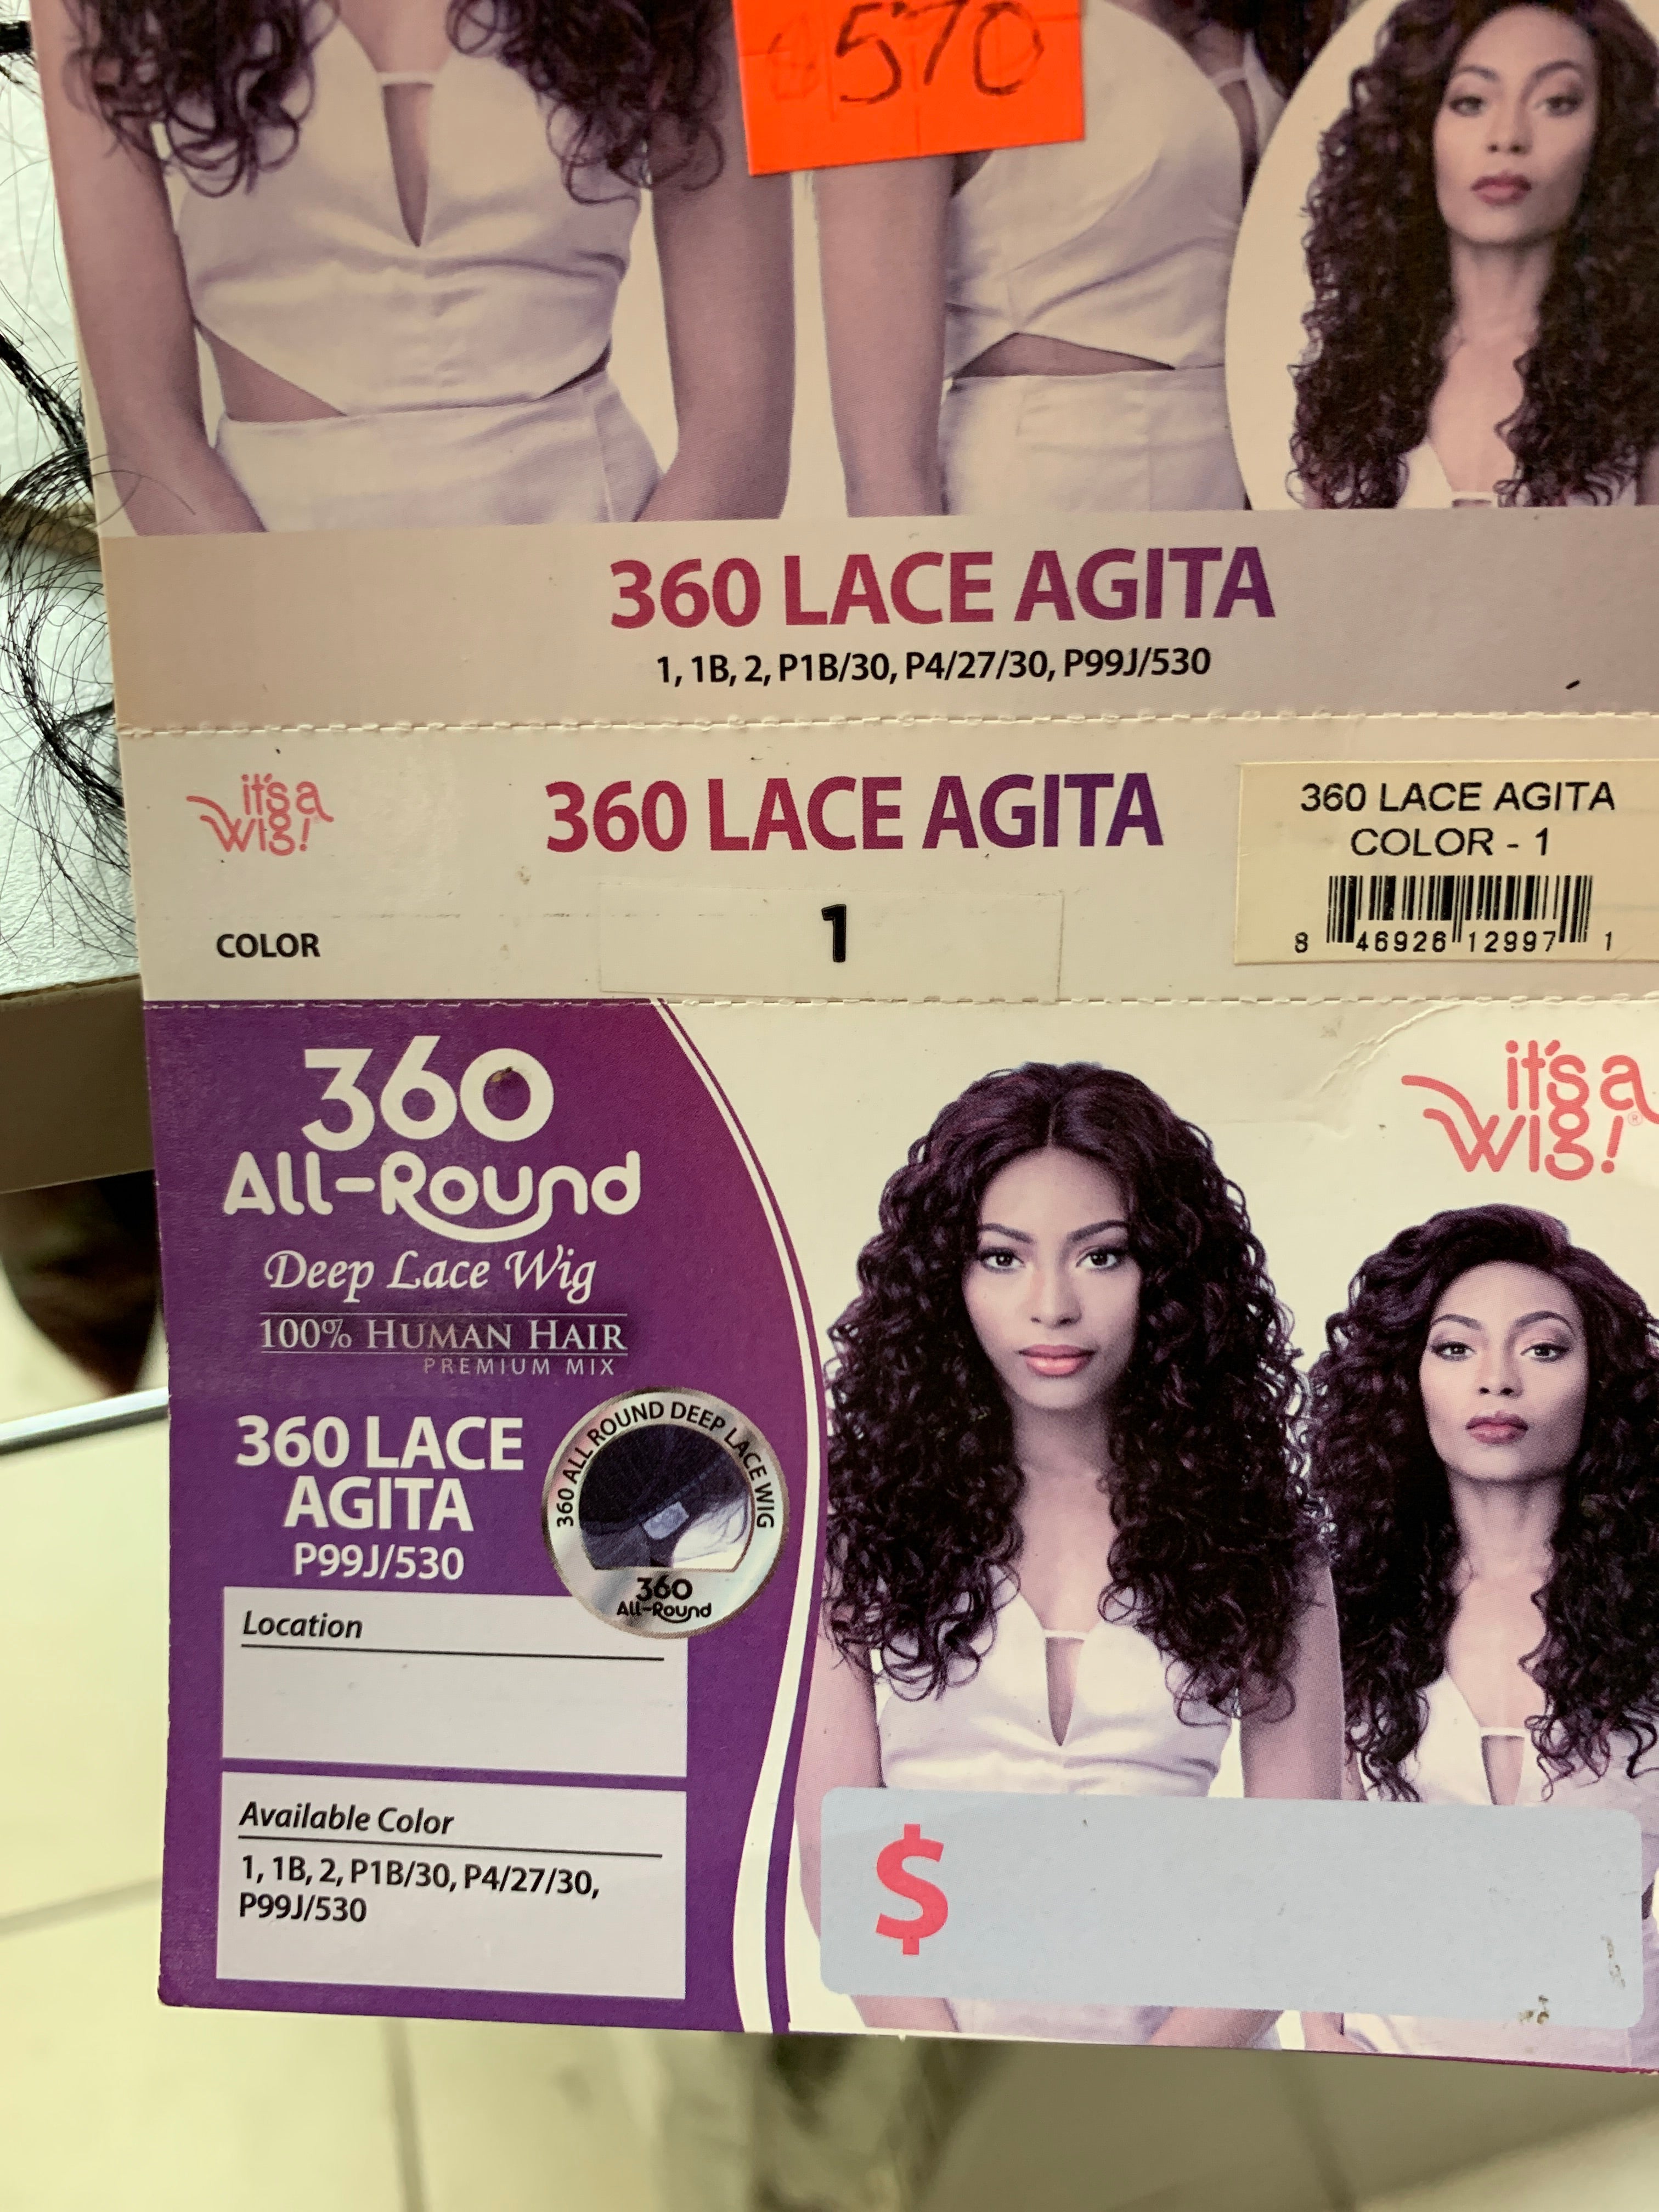 It’s a wig 360 lace Agita